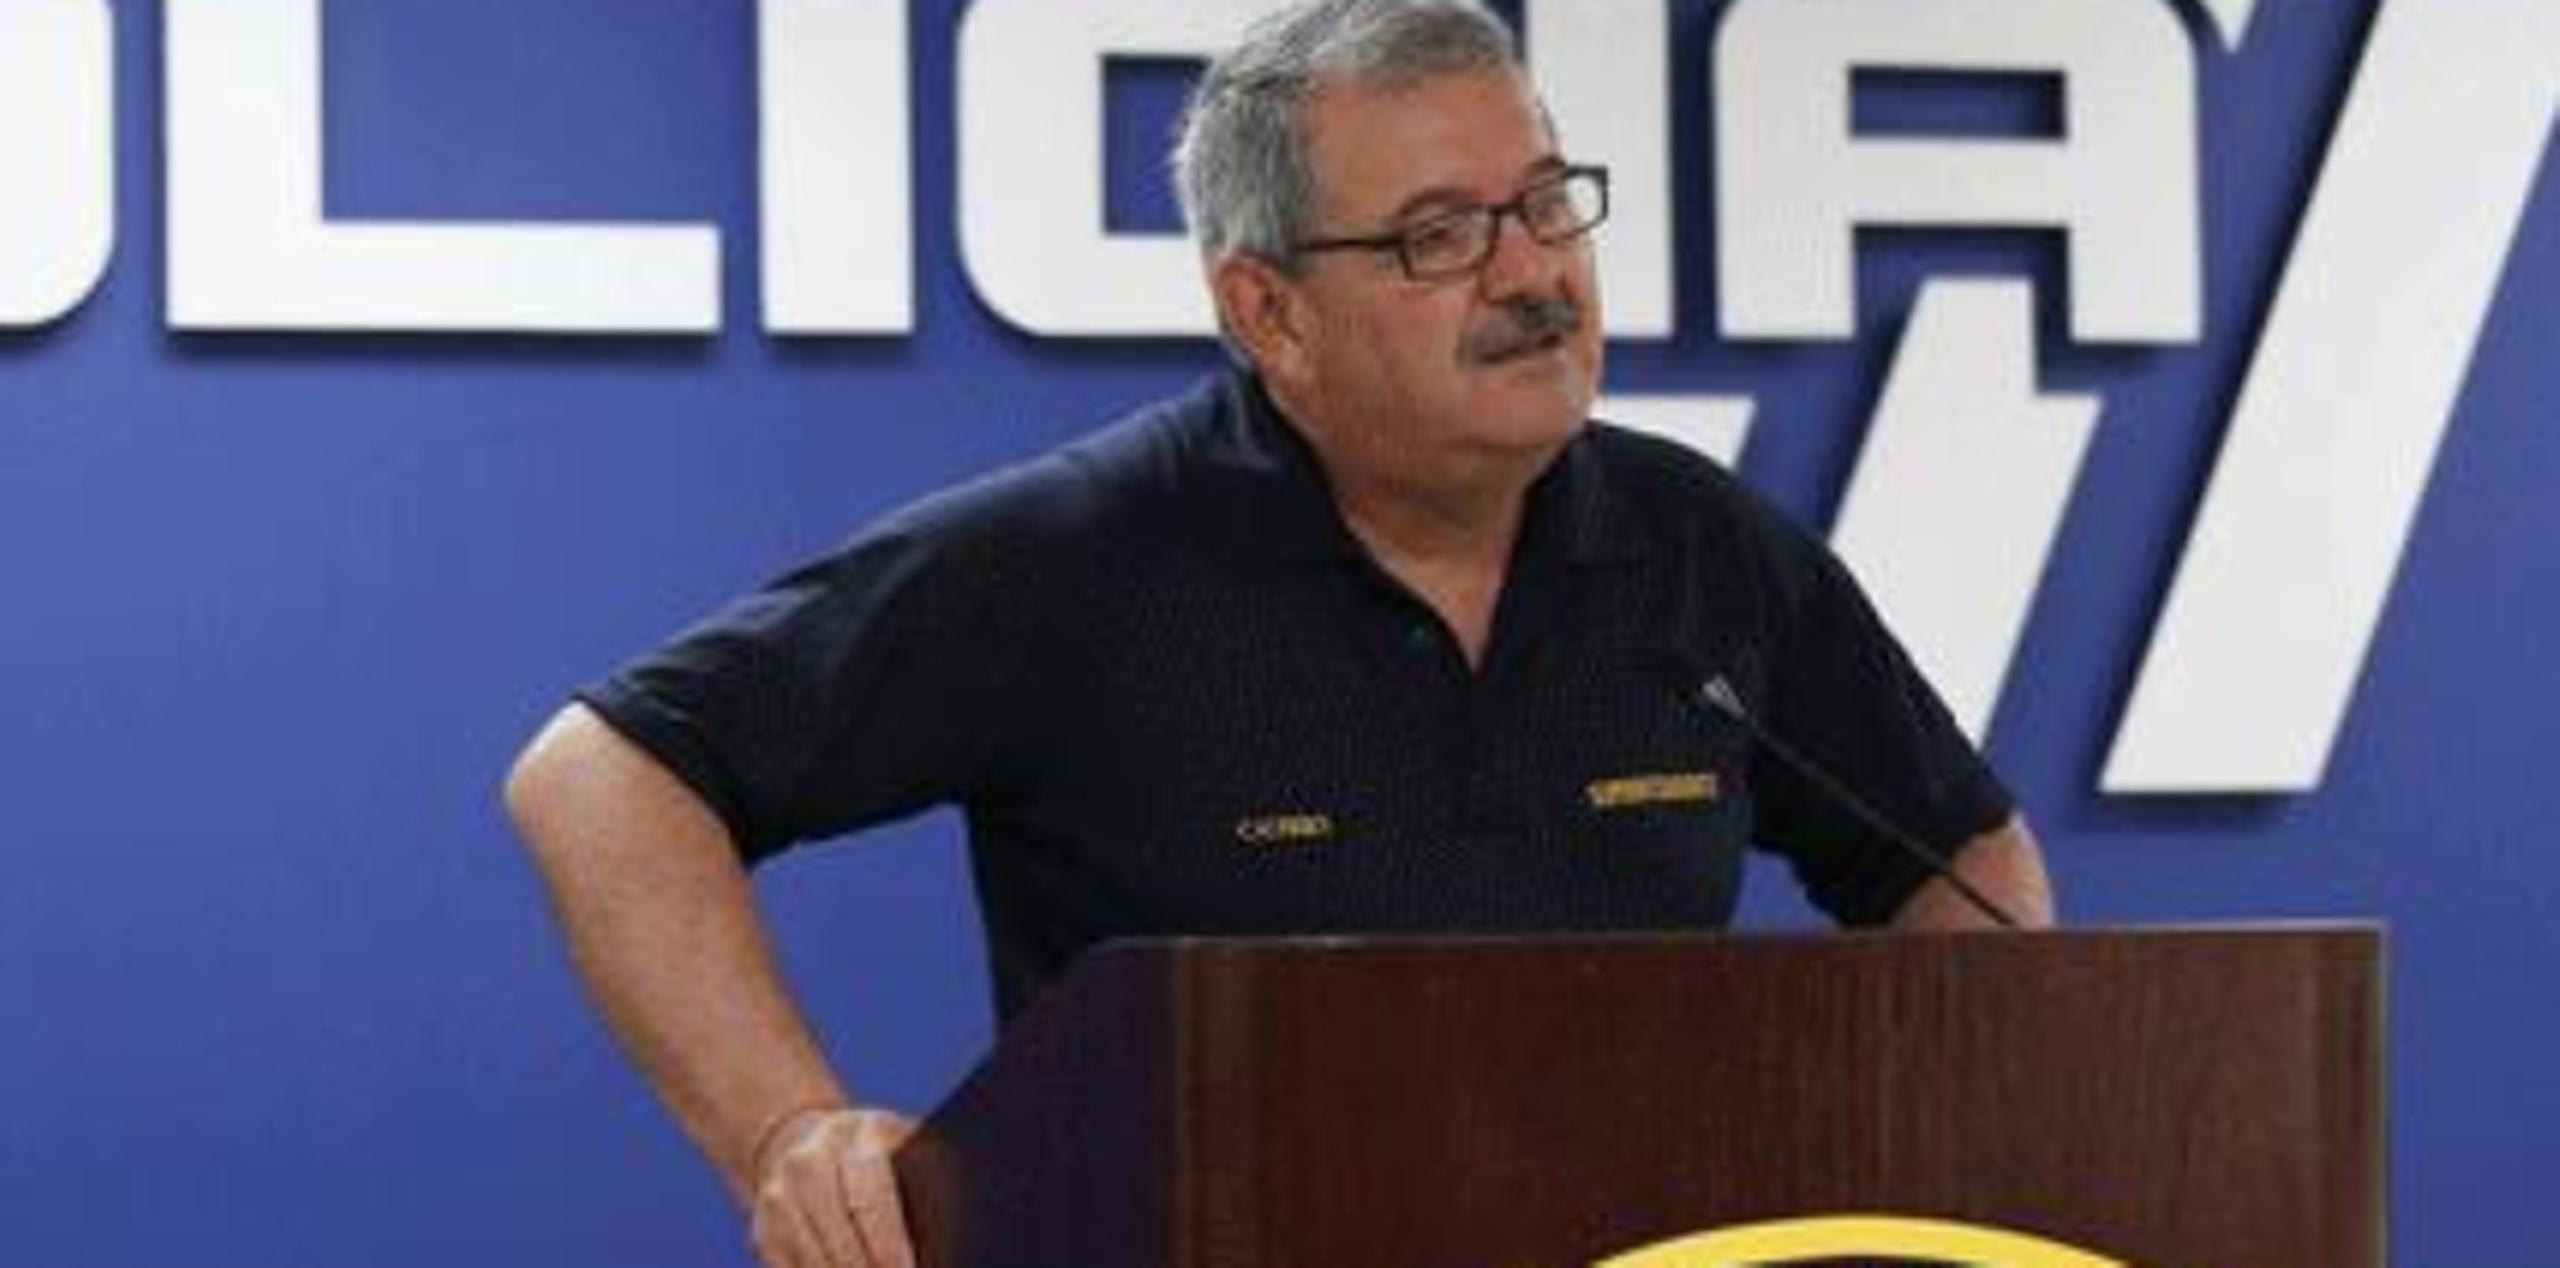 Amnistía Internacional ha dicho que estará pendiente a las medidas que tome el superintendente José Caldero contra esos agentes. (Archivo)